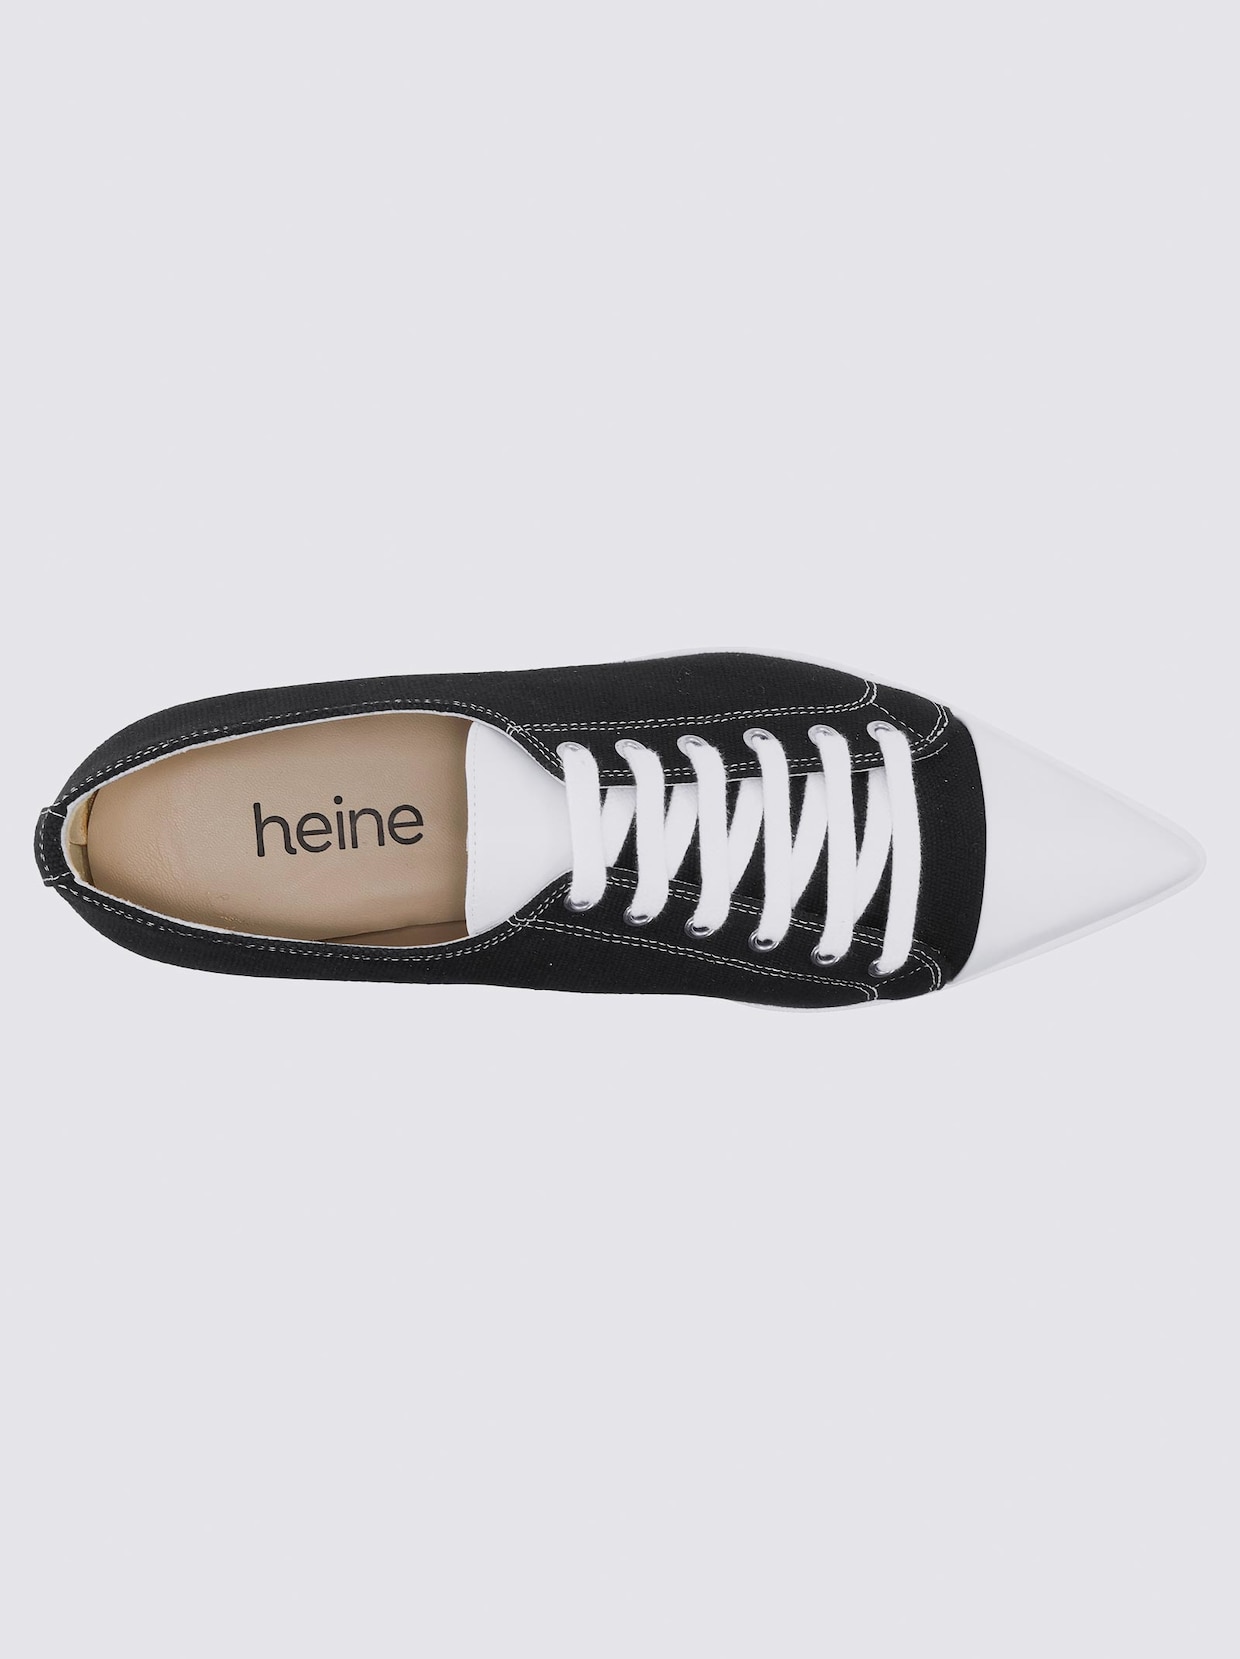 heine Sneaker - schwarz-weiß